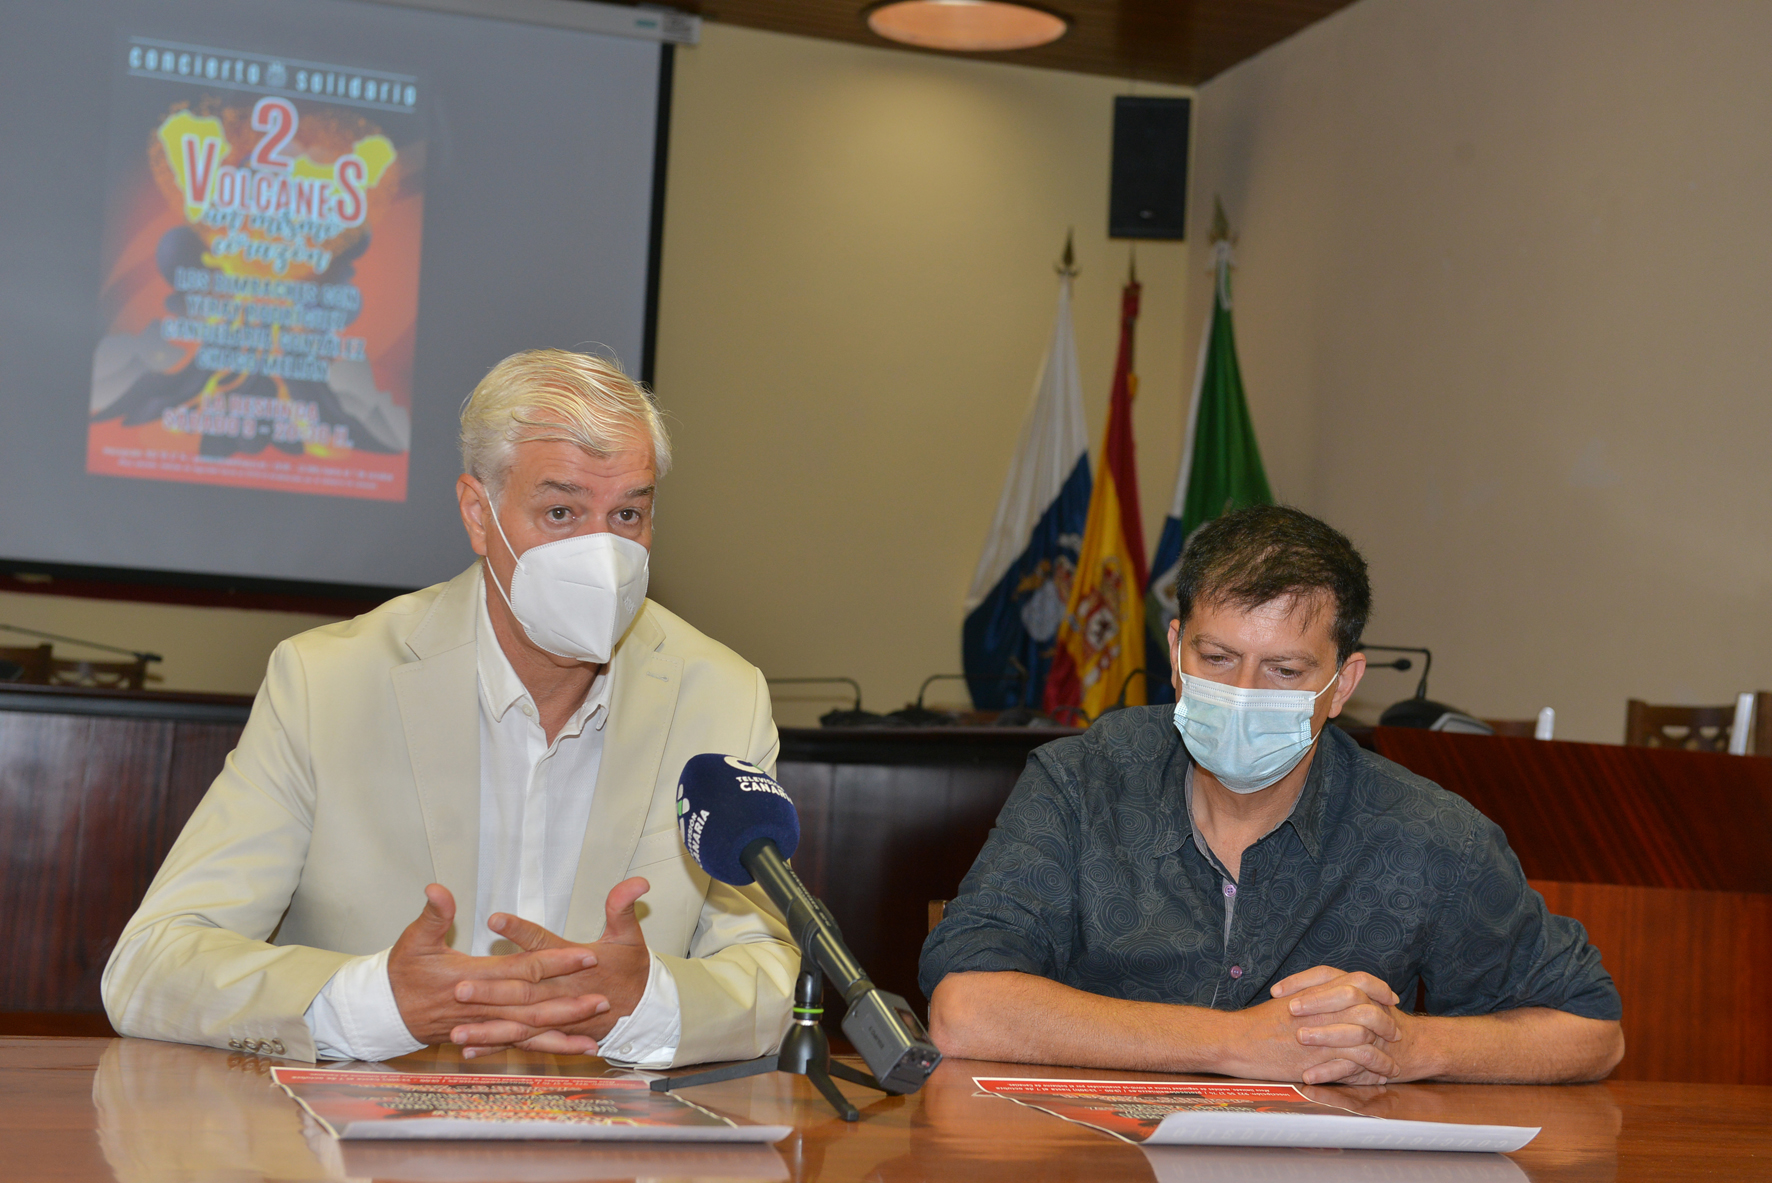 Benito Cabrera y Los Bimbaches ofrecen un concierto solidario con la isla de La Palma “2 volcanes, un mismo corazón”